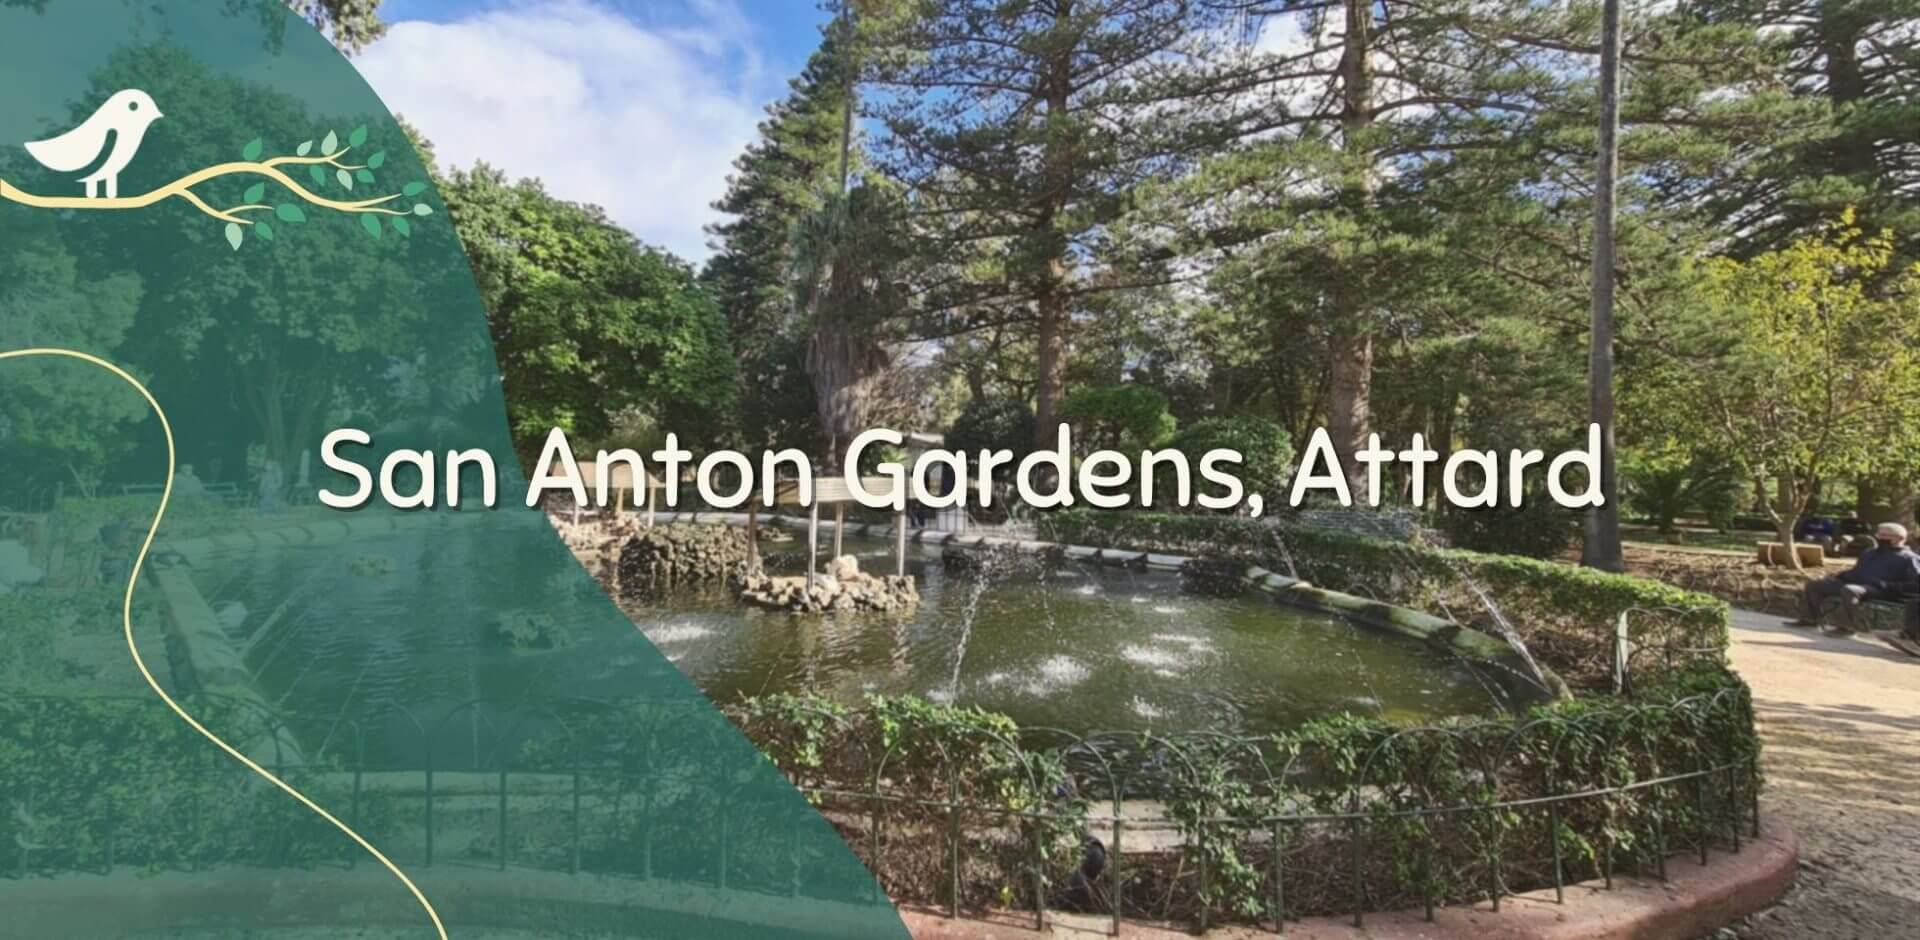 San Anton Gardens Guide: Attard